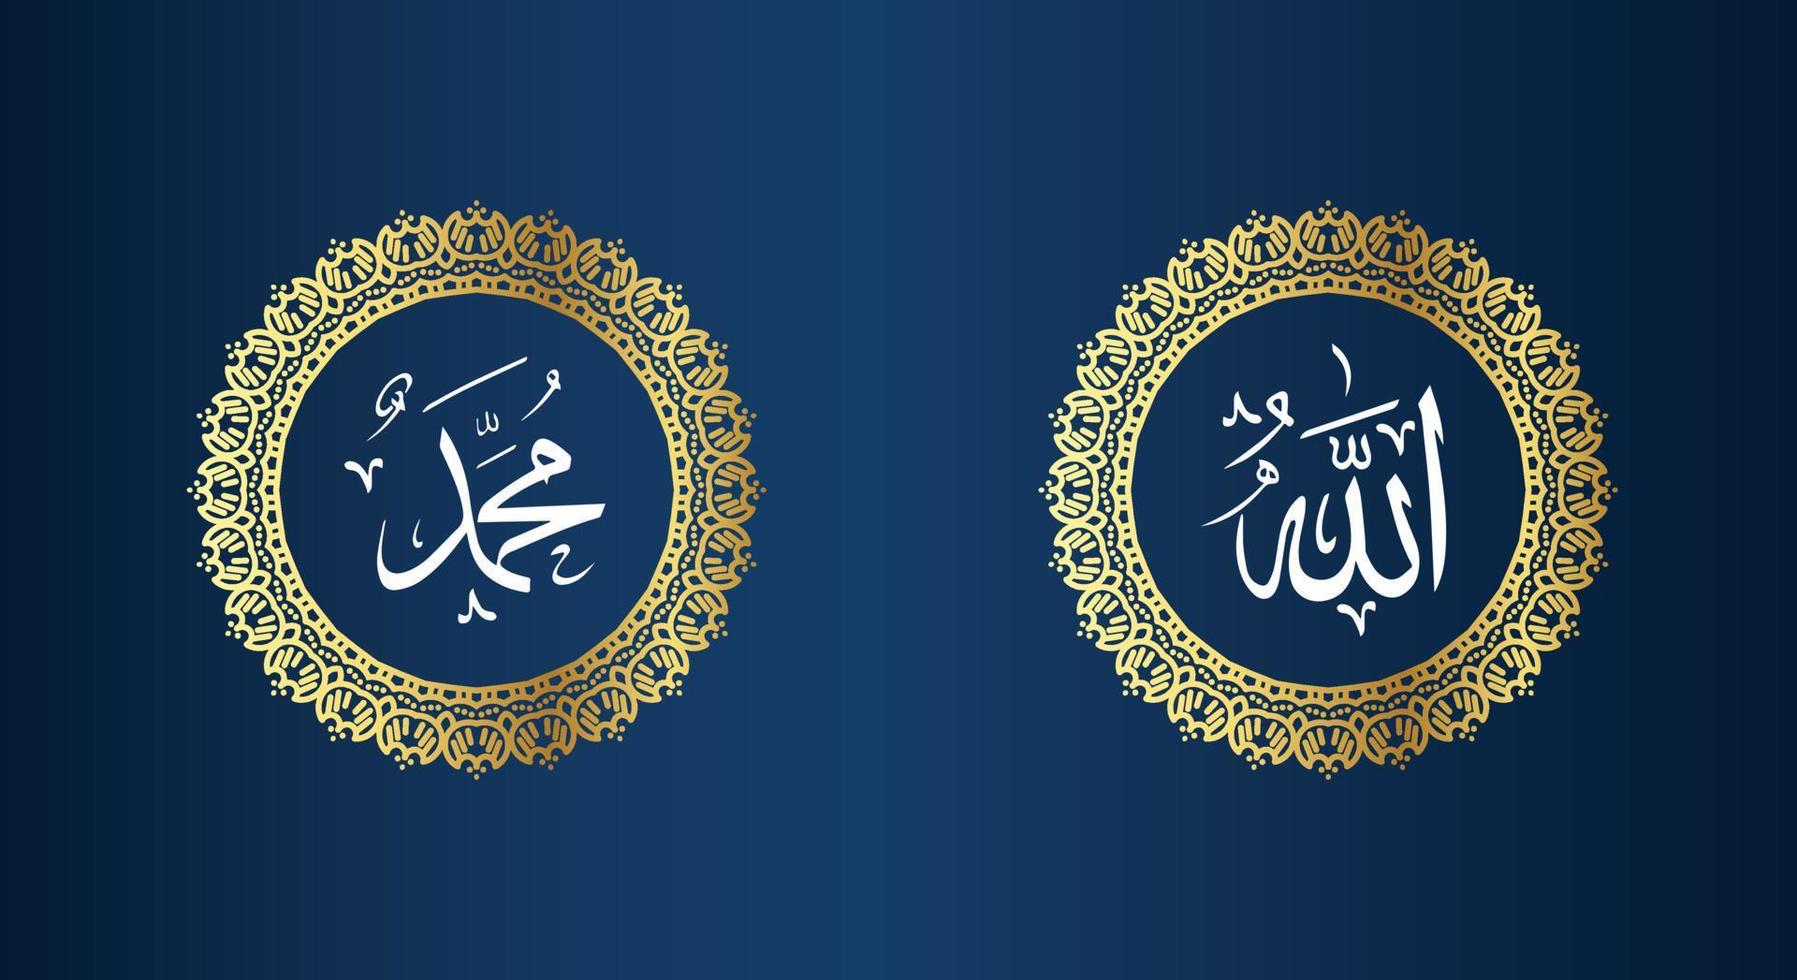 allah muhammad nom d'allah muhammad, art de calligraphie islamique arabe allah muhammad, avec cadre traditionnel et couleur dorée vecteur